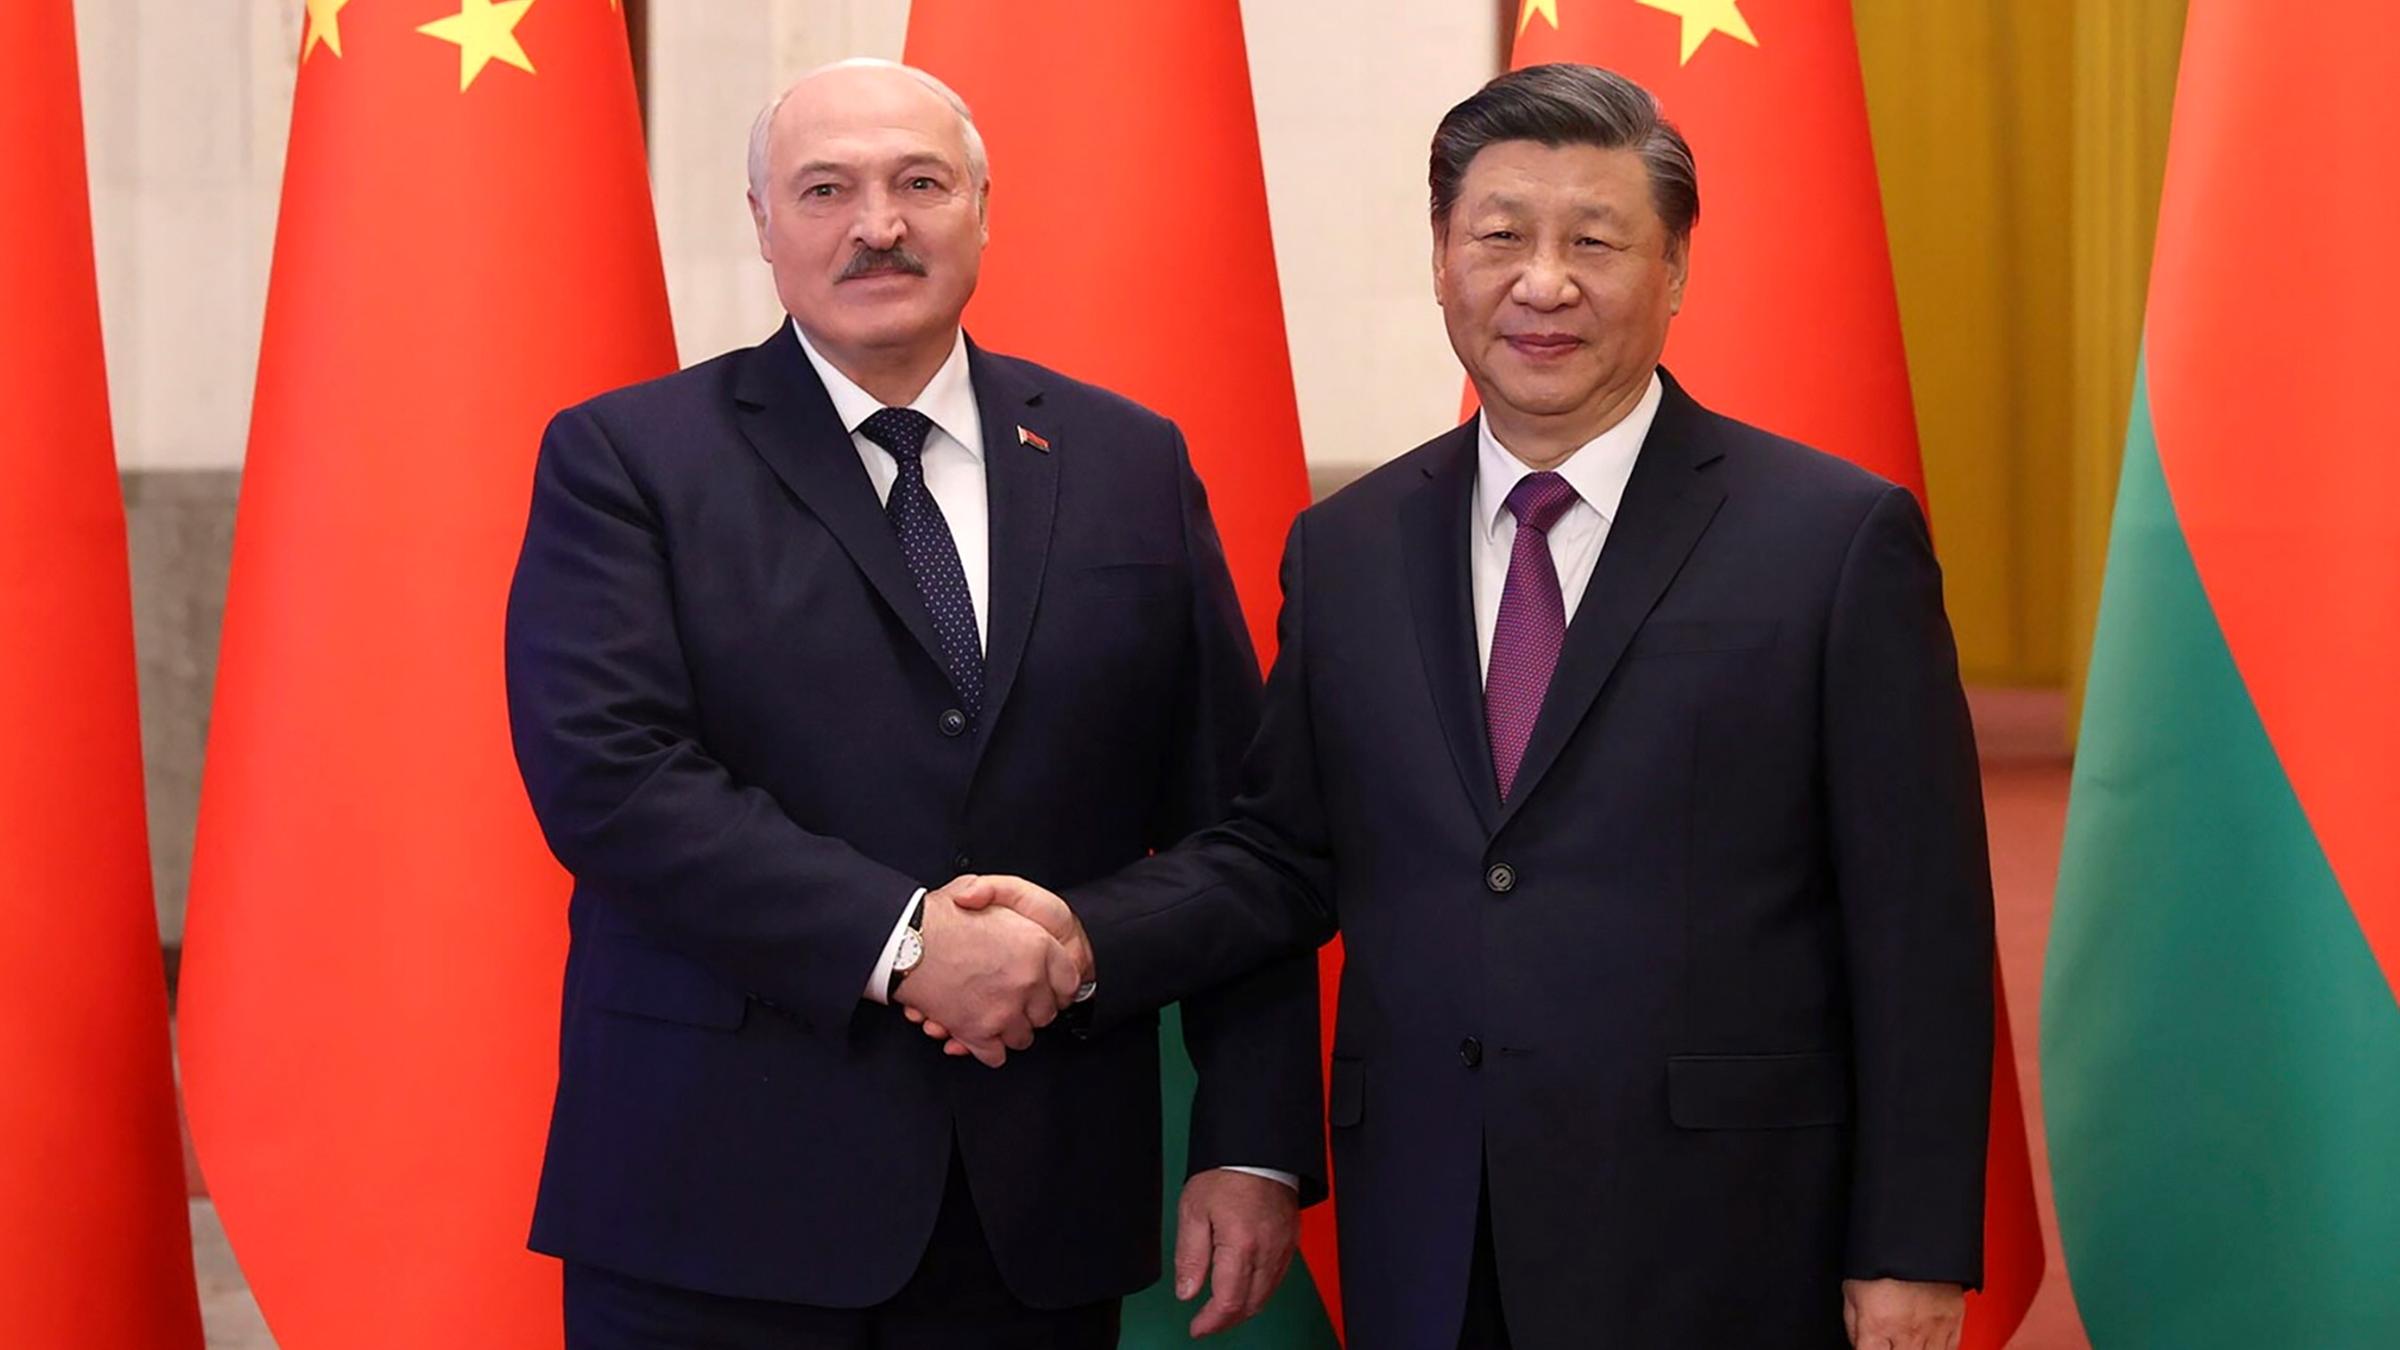 Der belarussische Präsident Lukaschenko schüttelt dem chinesischen Präsidenten Xi während eines Besuches in China die Hand.